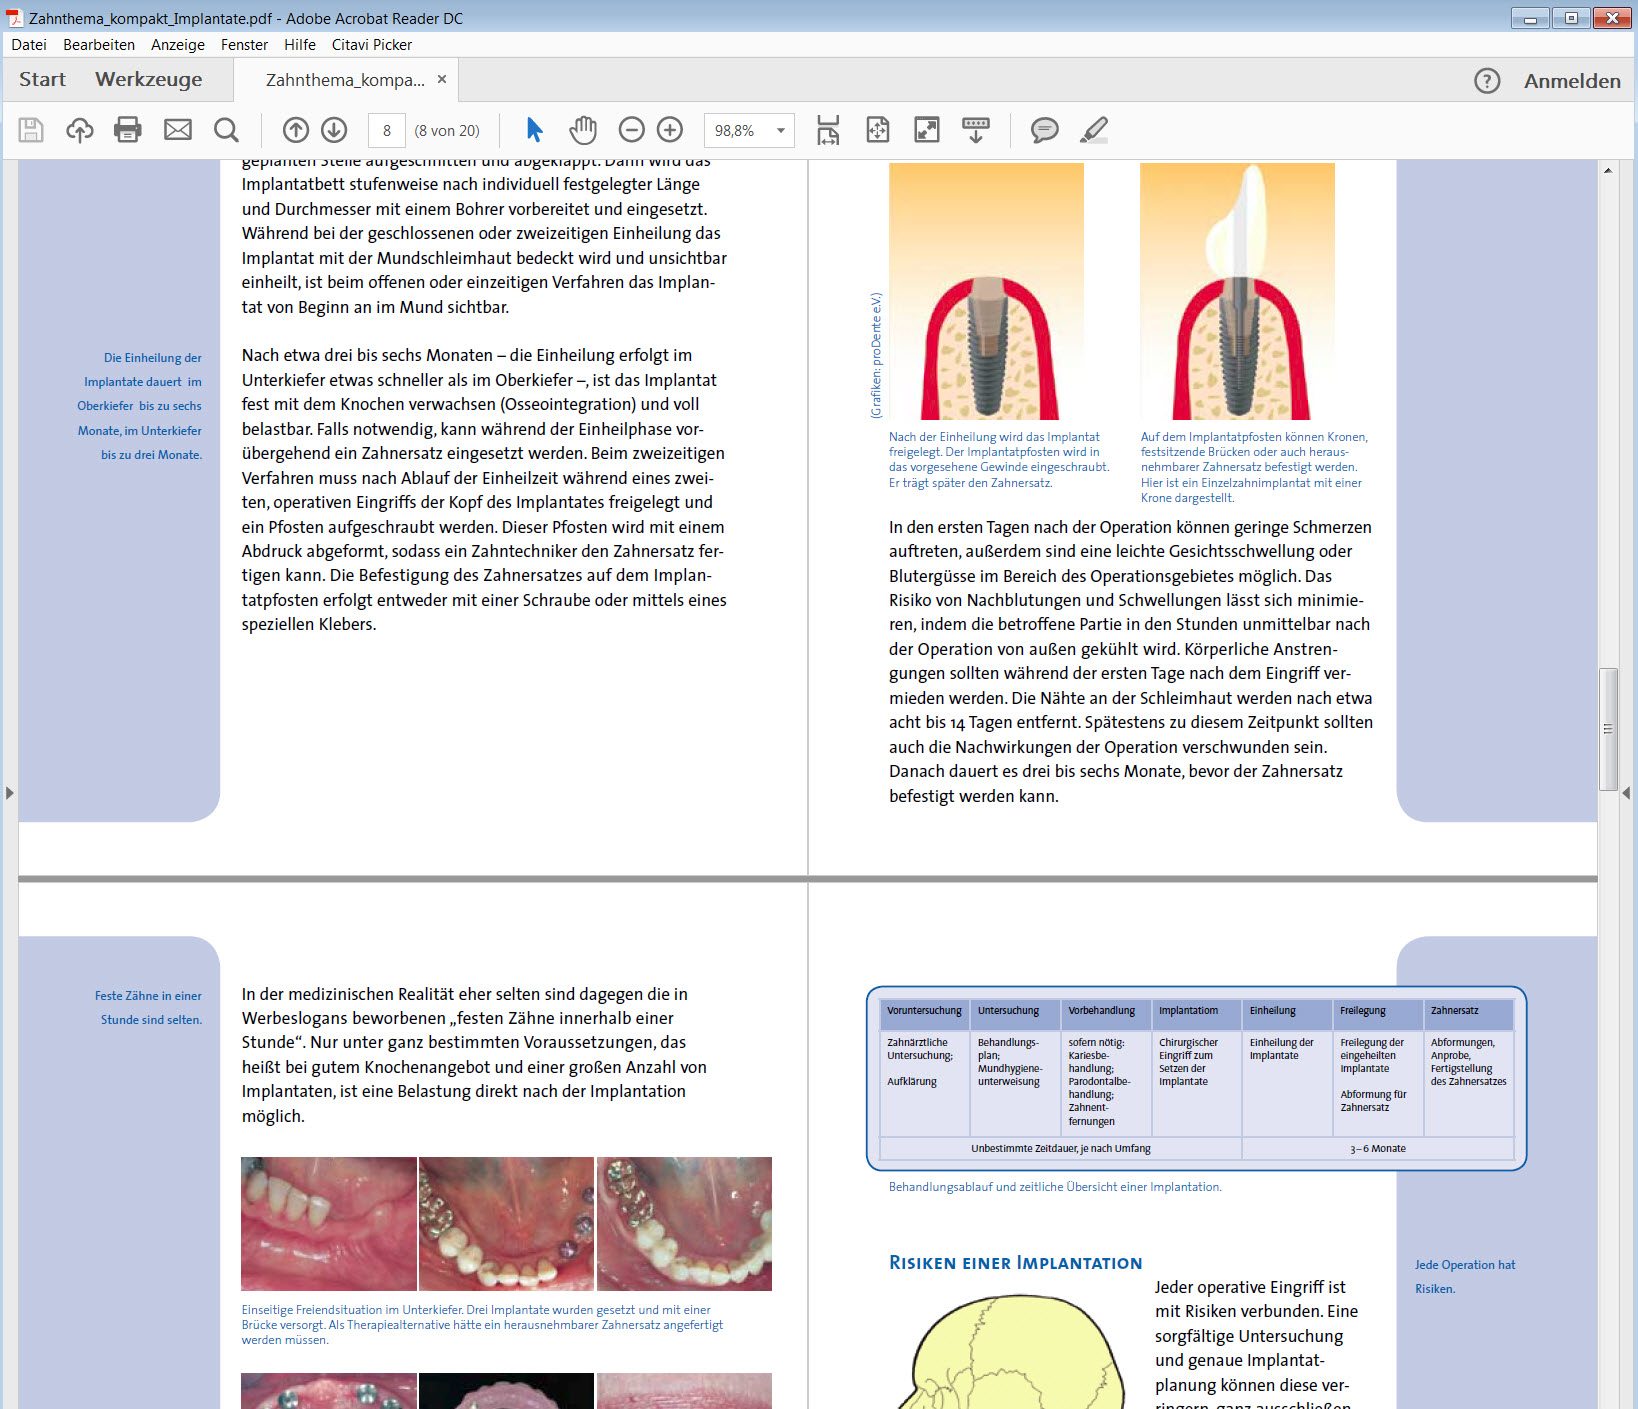 Interessante Übersicht rund um das Thema Zahnimplantate in PDF-Form (http://www.agz-rnk.de/agz/download/1/Zahnthema_kompakt_Implantate.pdf?m=1433949196)